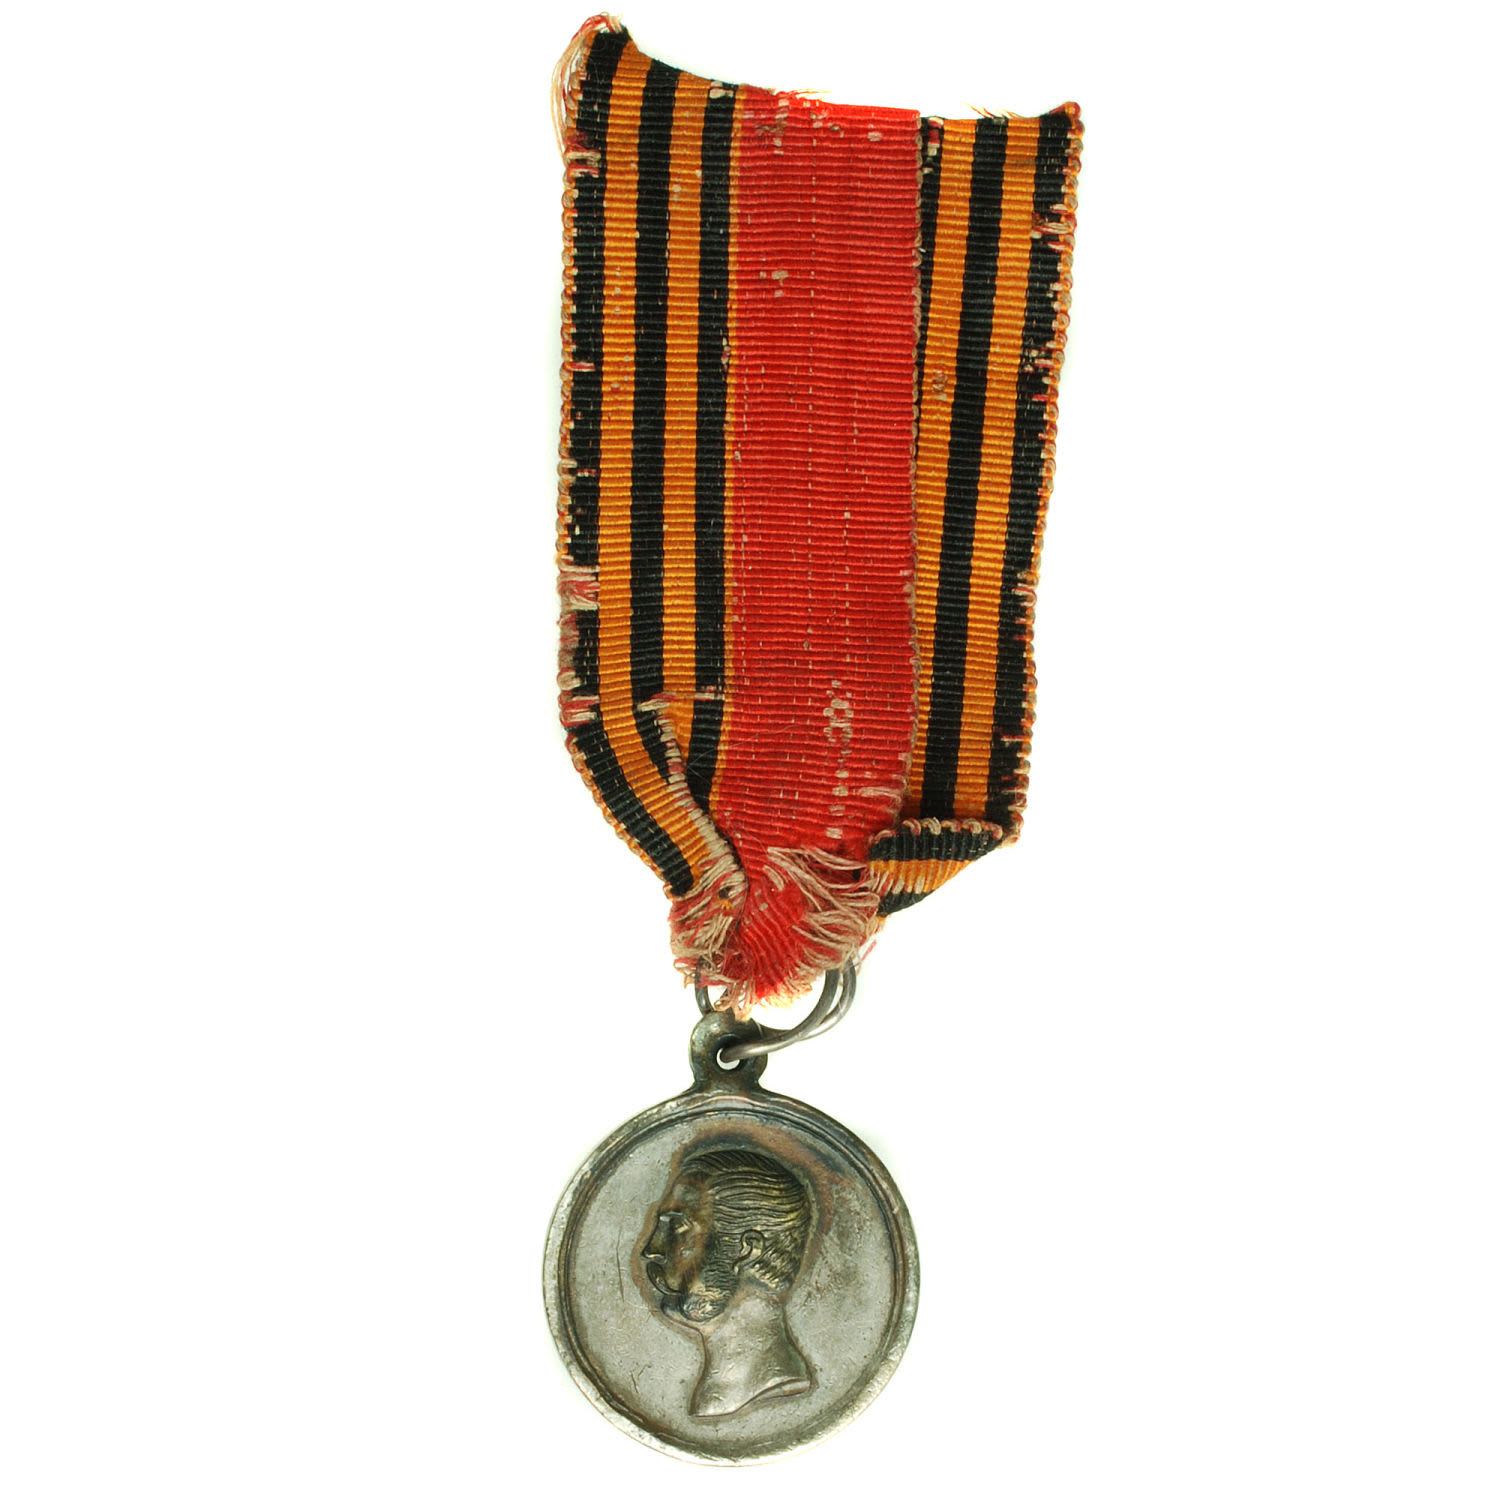 Медаль "За покорение Западного Кавказа 1859 - 1864 гг" на ленте. Частник.